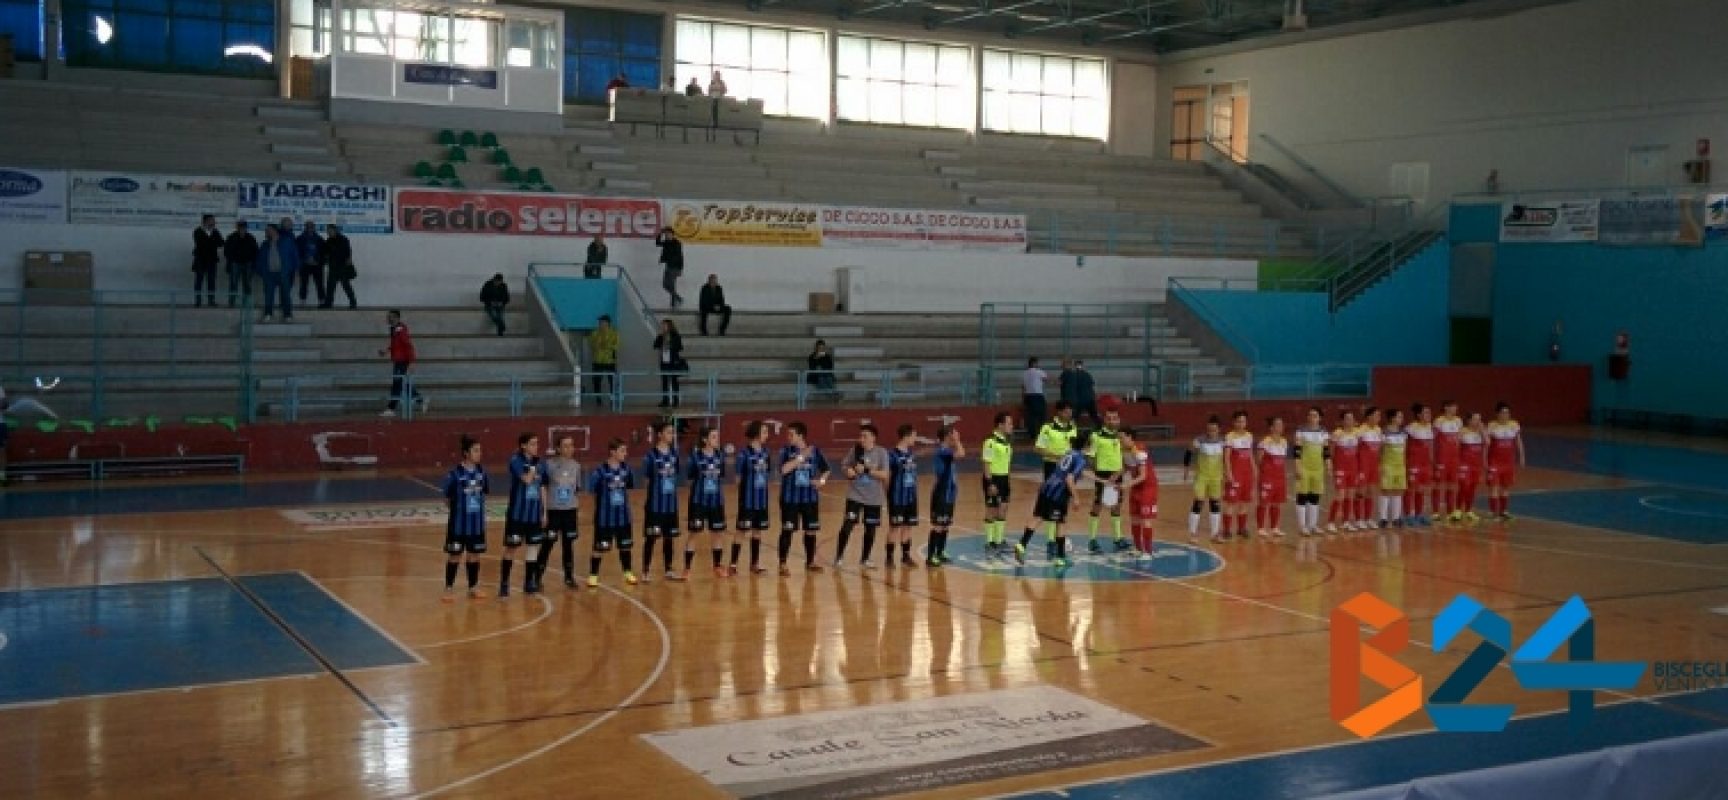 Calcio a 5 femminile: pesante ko interno per l’Arcadia, pari e speranze per il Futsal Bisceglie